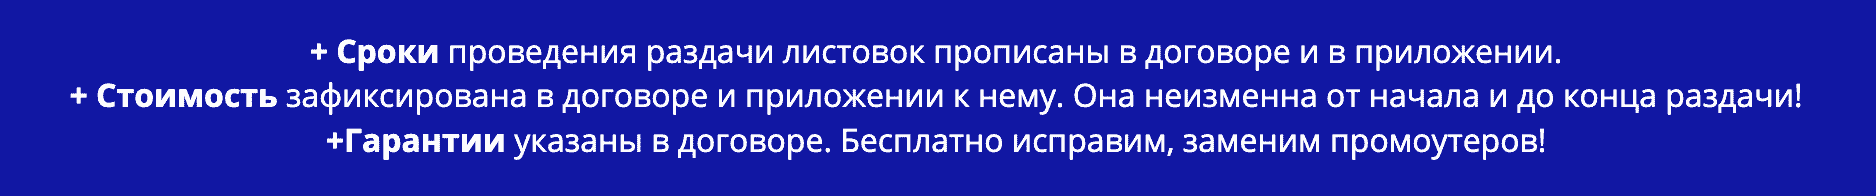 Условия договора раздачи листовок в г. Новосибирск